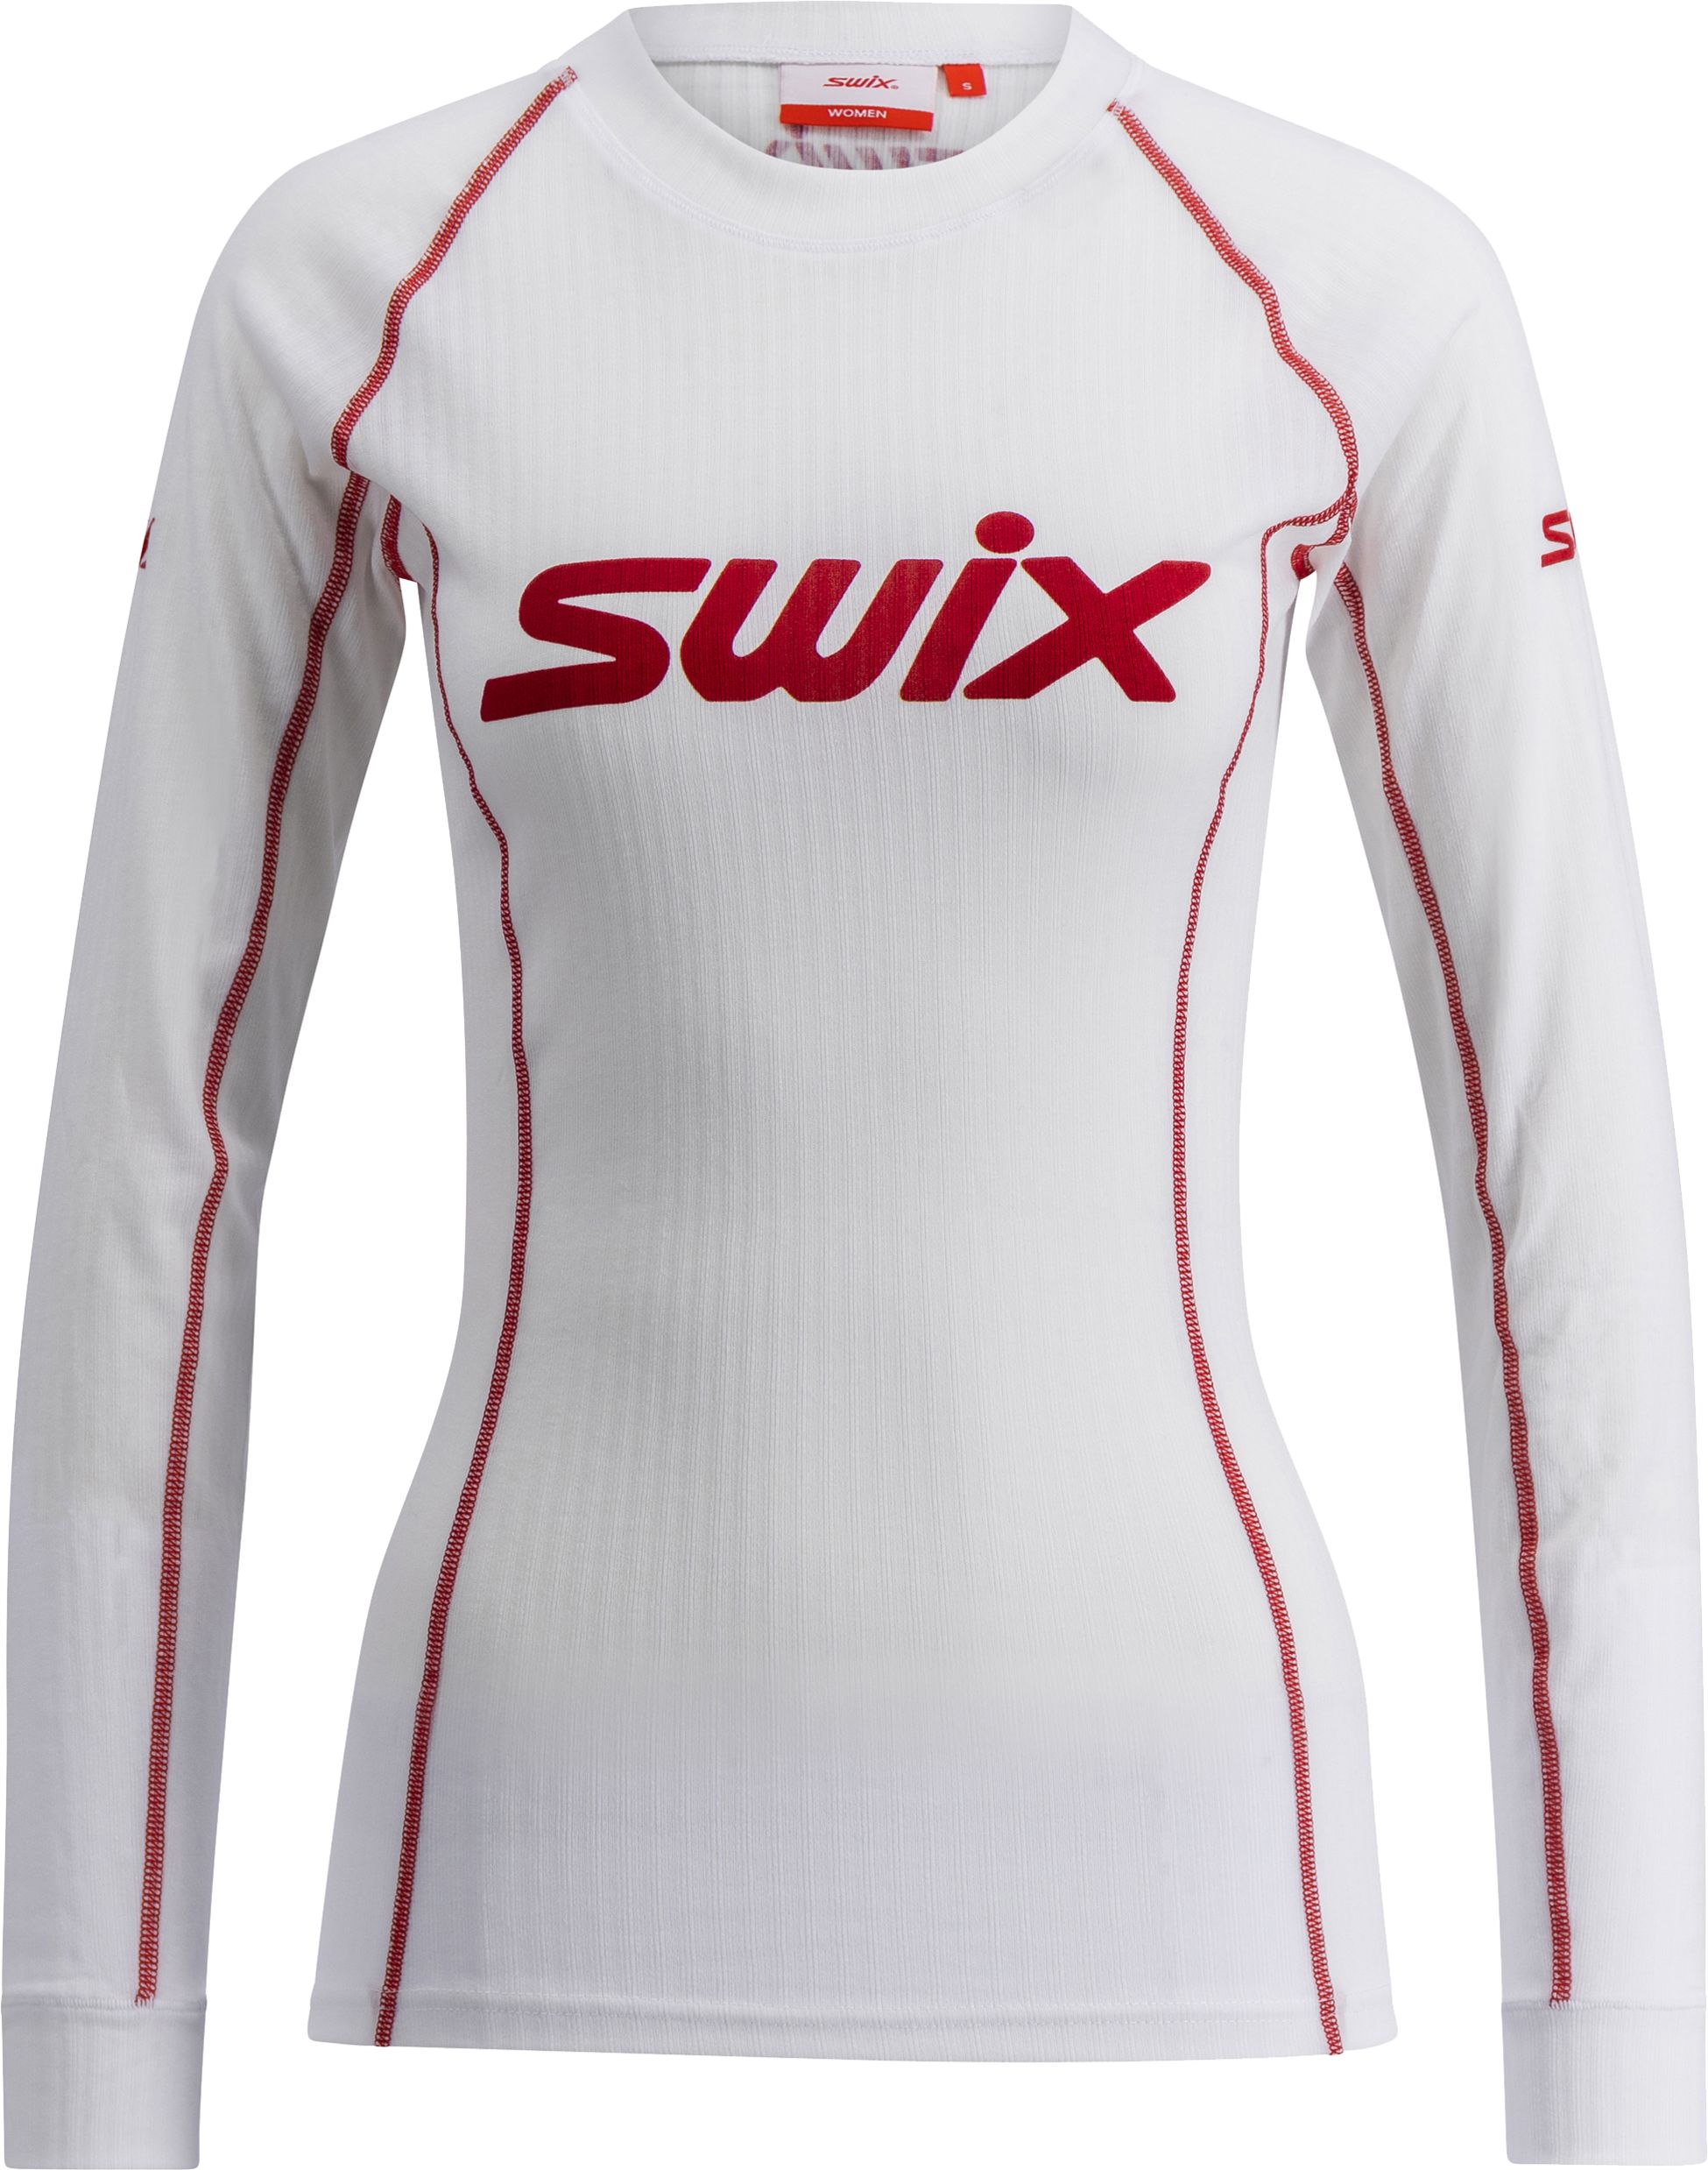 SWIX, W RaceX Classic Long Sleeve